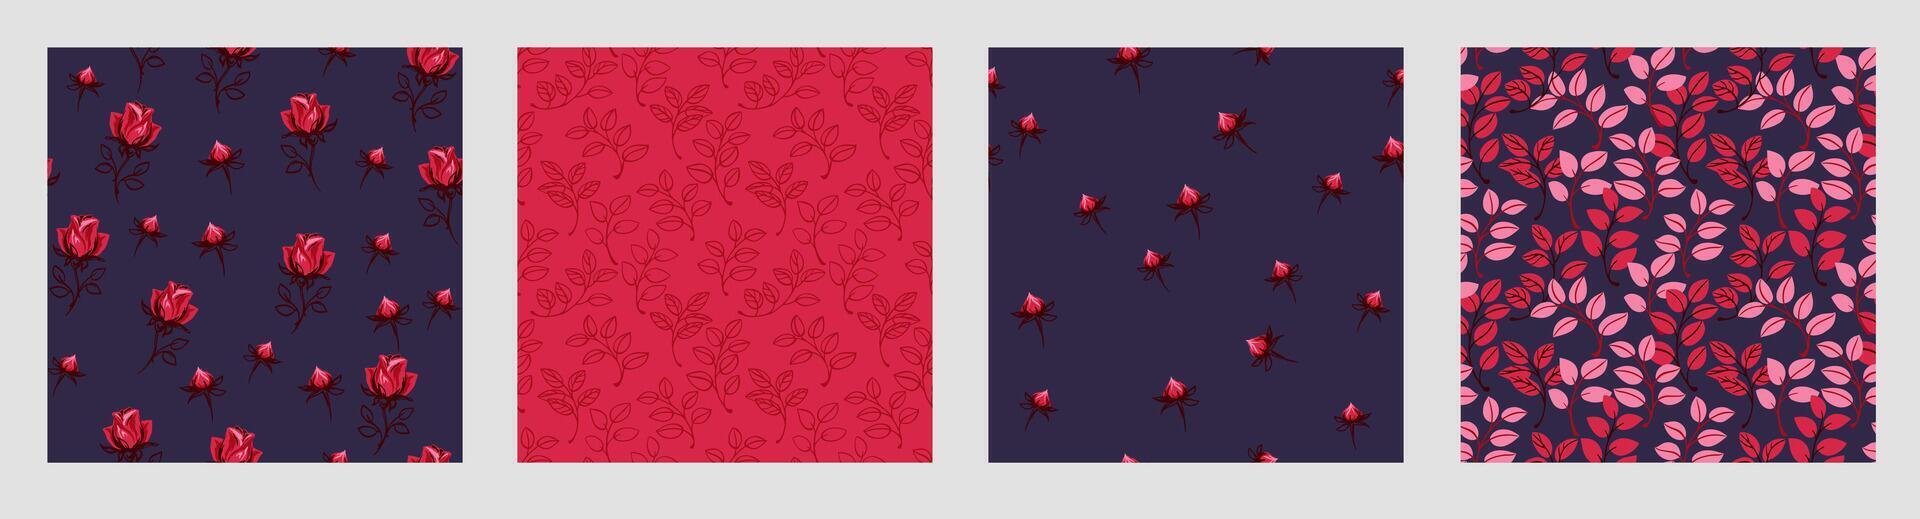 hell Collage von einstellen nahtlos Muster mit abstrakt kreativ süß Blumen Rosen, Rosenknospe, winzig Knospen, Formen Blätter. Vektor Hand gezeichnet skizzieren. Vorlagen zum Design, Stoff, Drucken